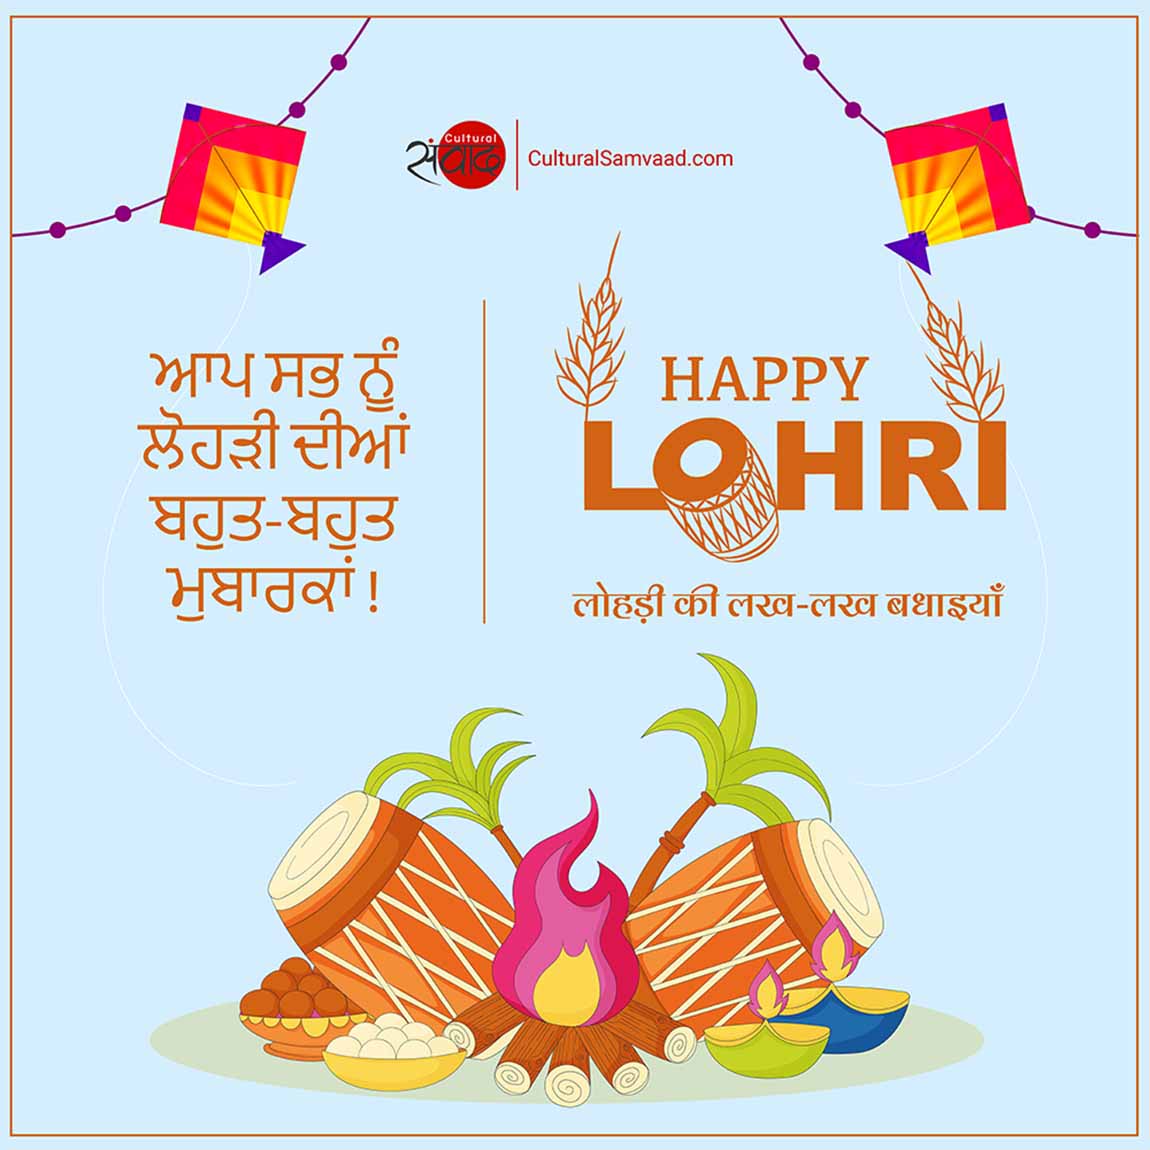 Greetings on लोहड़ी | Happy Lohri